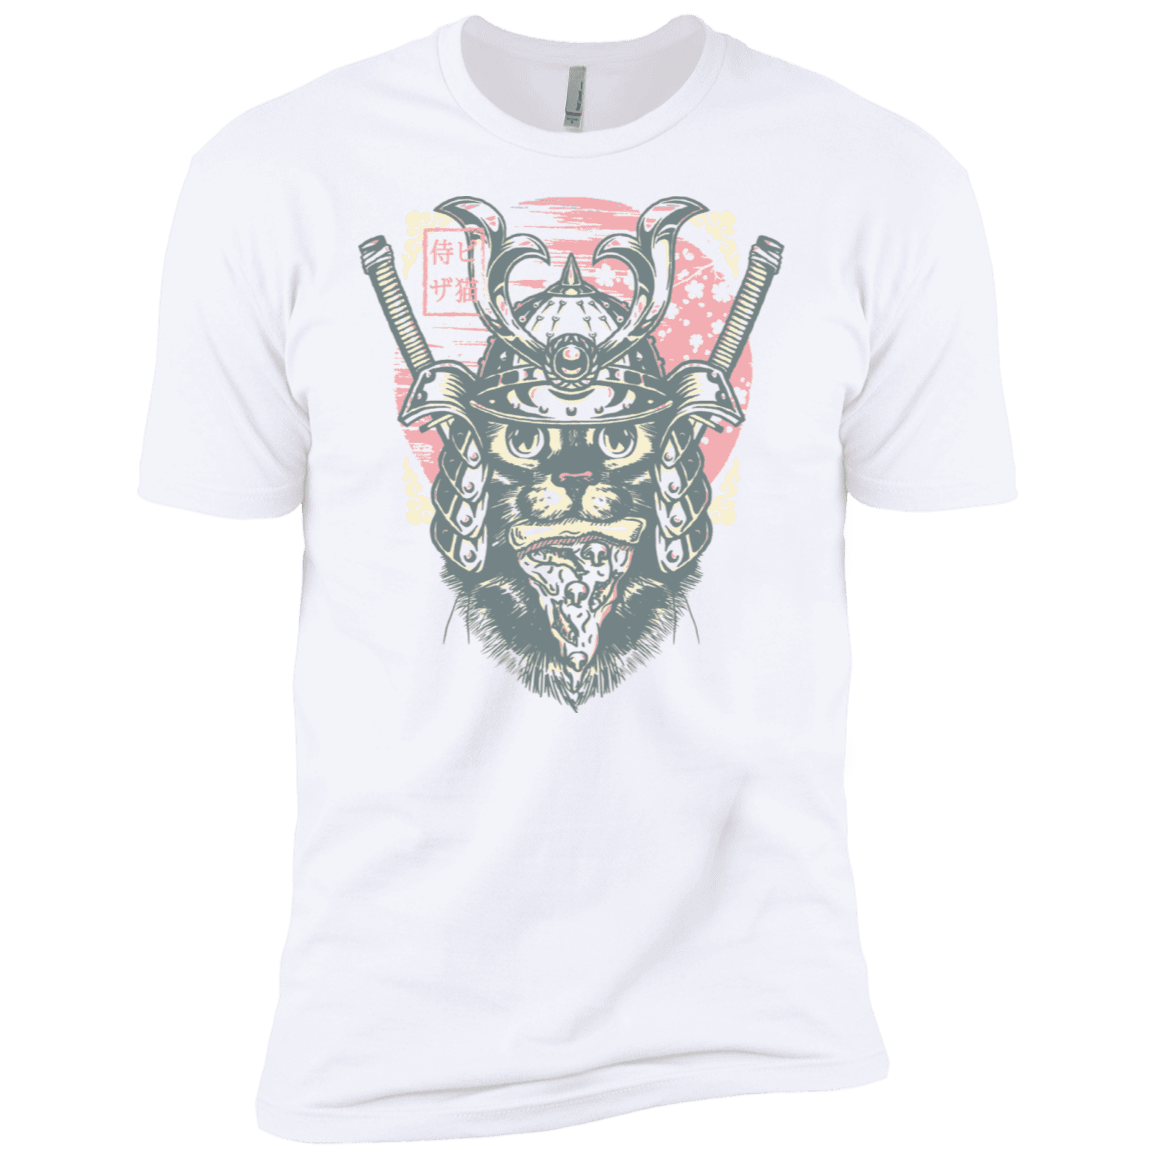 T-Shirts White / X-Small Samurai Pizza Cat Men's Premium T-Shirt